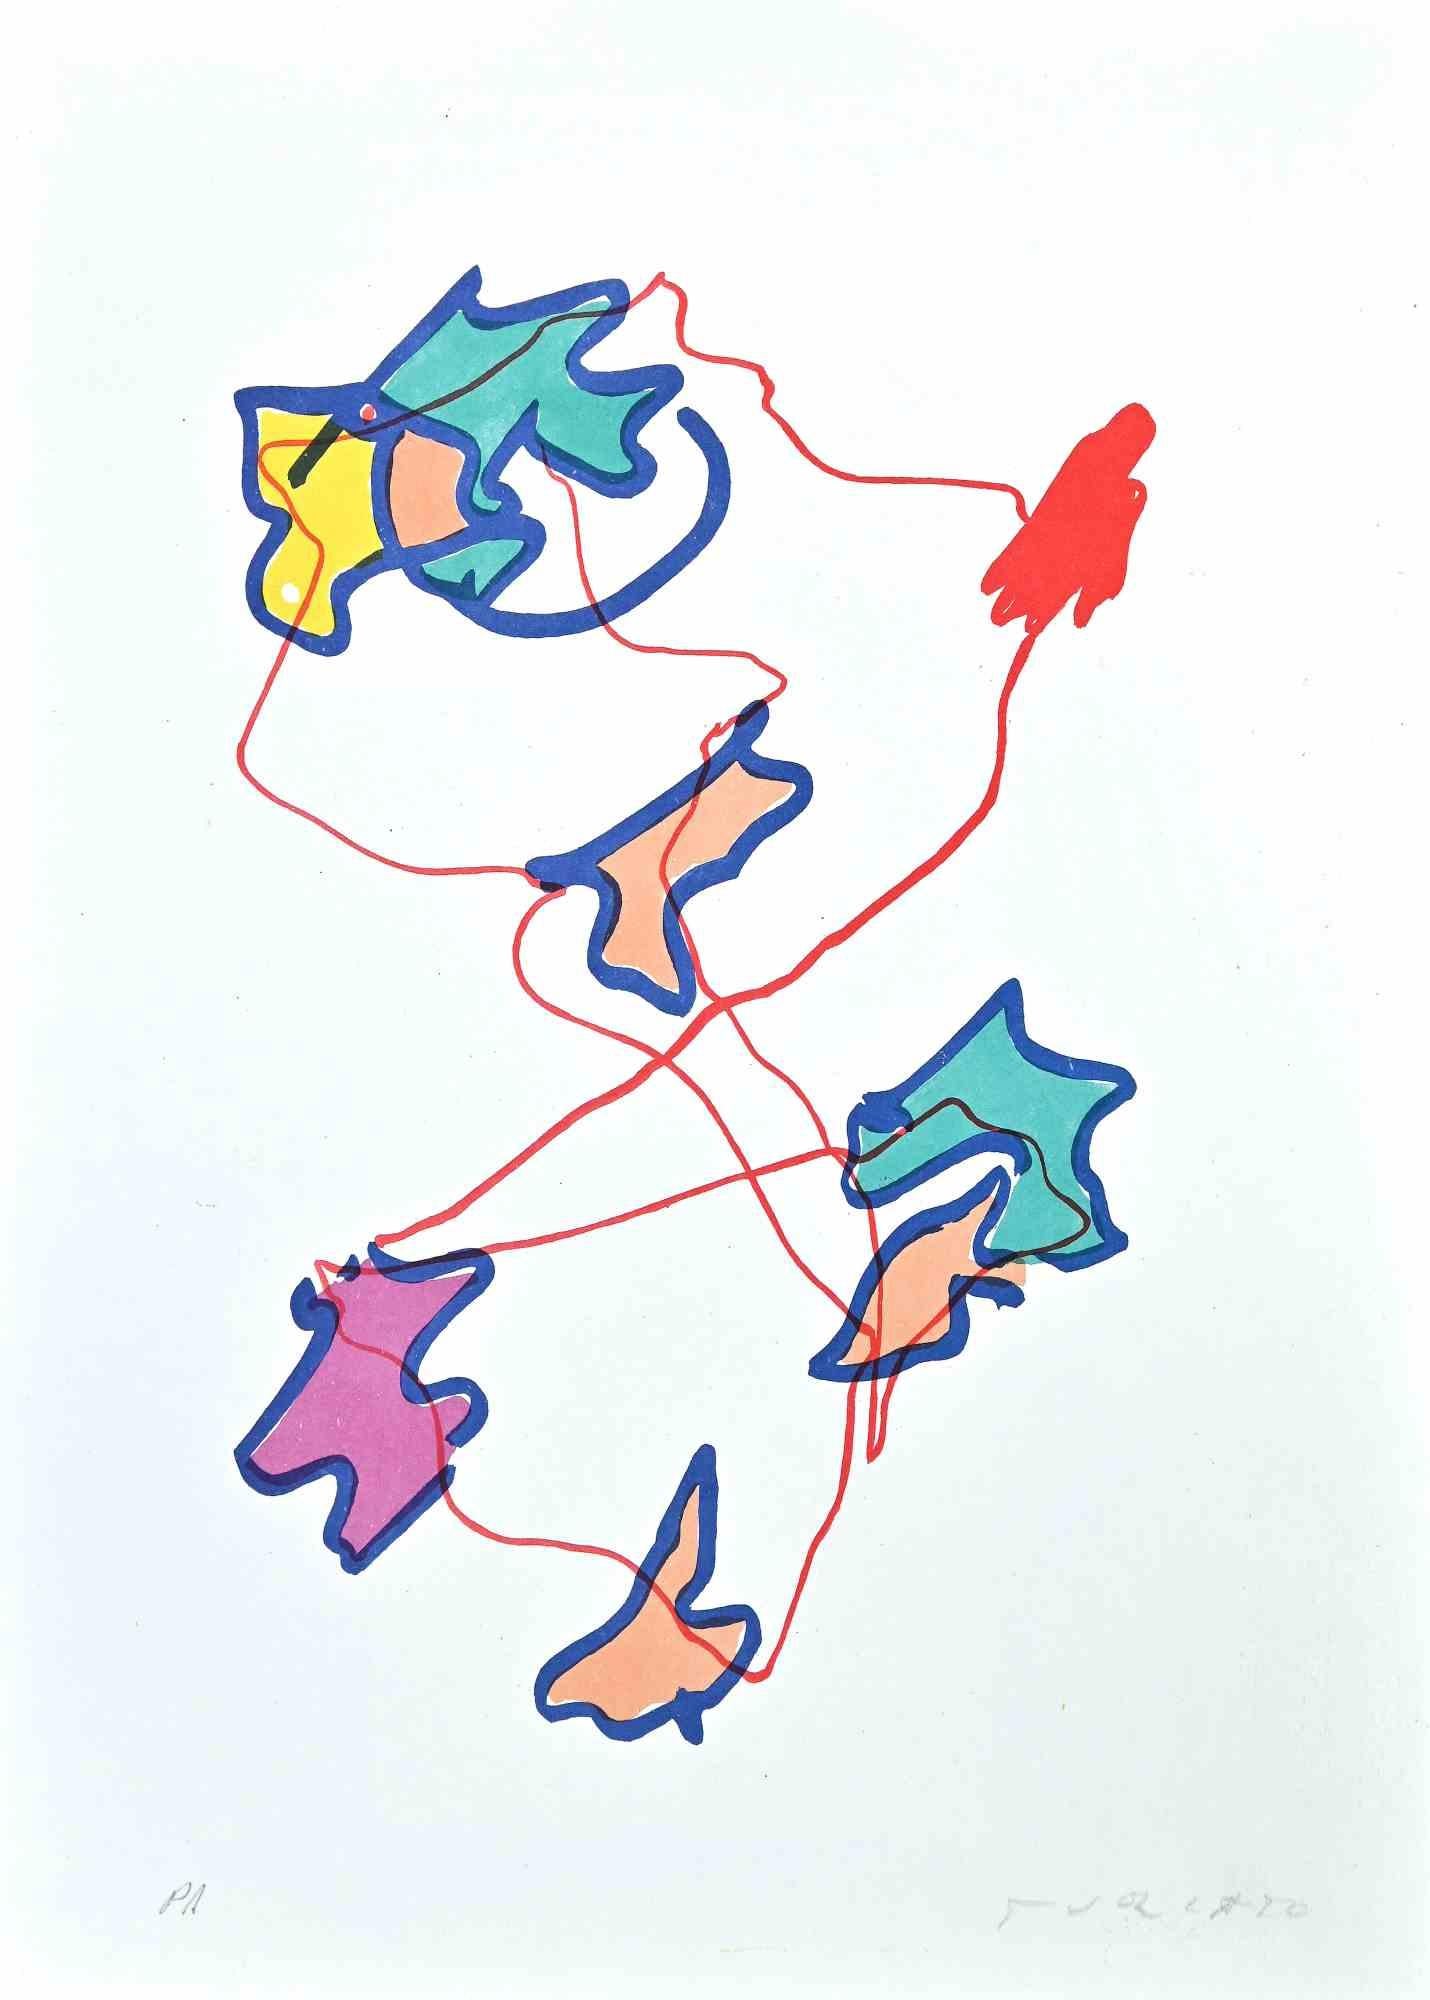 Abstrakte Komposition ist eine Farblithografie des zeitgenössischen Künstlers Giulio Turcato aus dem Jahr 1973.

Handsigniert mit Bleistift unten rechts.

Künstlernachweis.

Gute Bedingungen.

Giulio Turcato (1912 - 1995) war ein italienischer